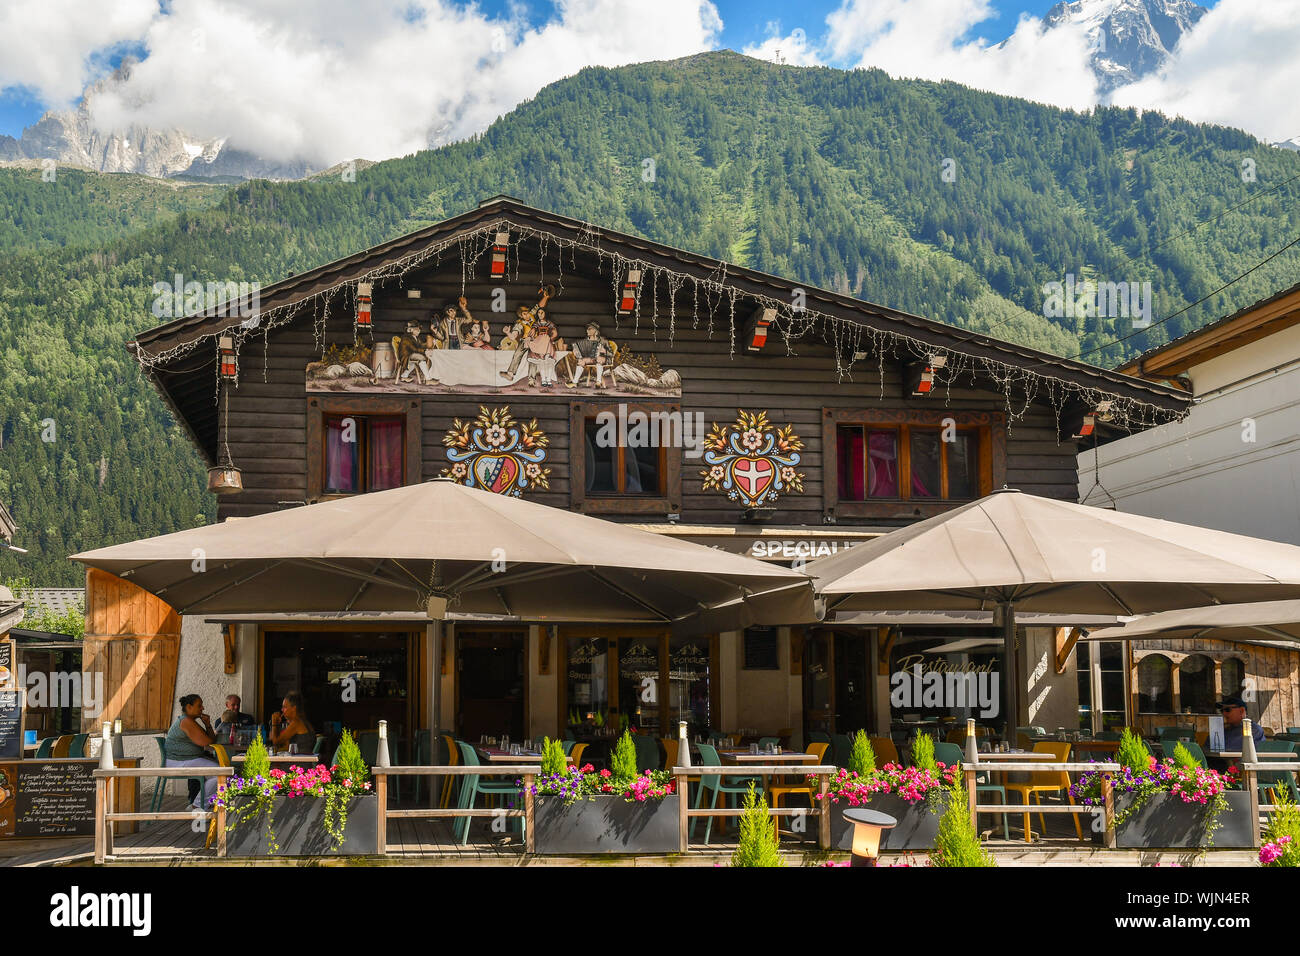 De l'extérieur d'un café avec terrasse dans un style alpin typique dans le centre de Chamonix-Mont-Blanc avec le massif du Mont Blanc en arrière-plan en été, France Banque D'Images